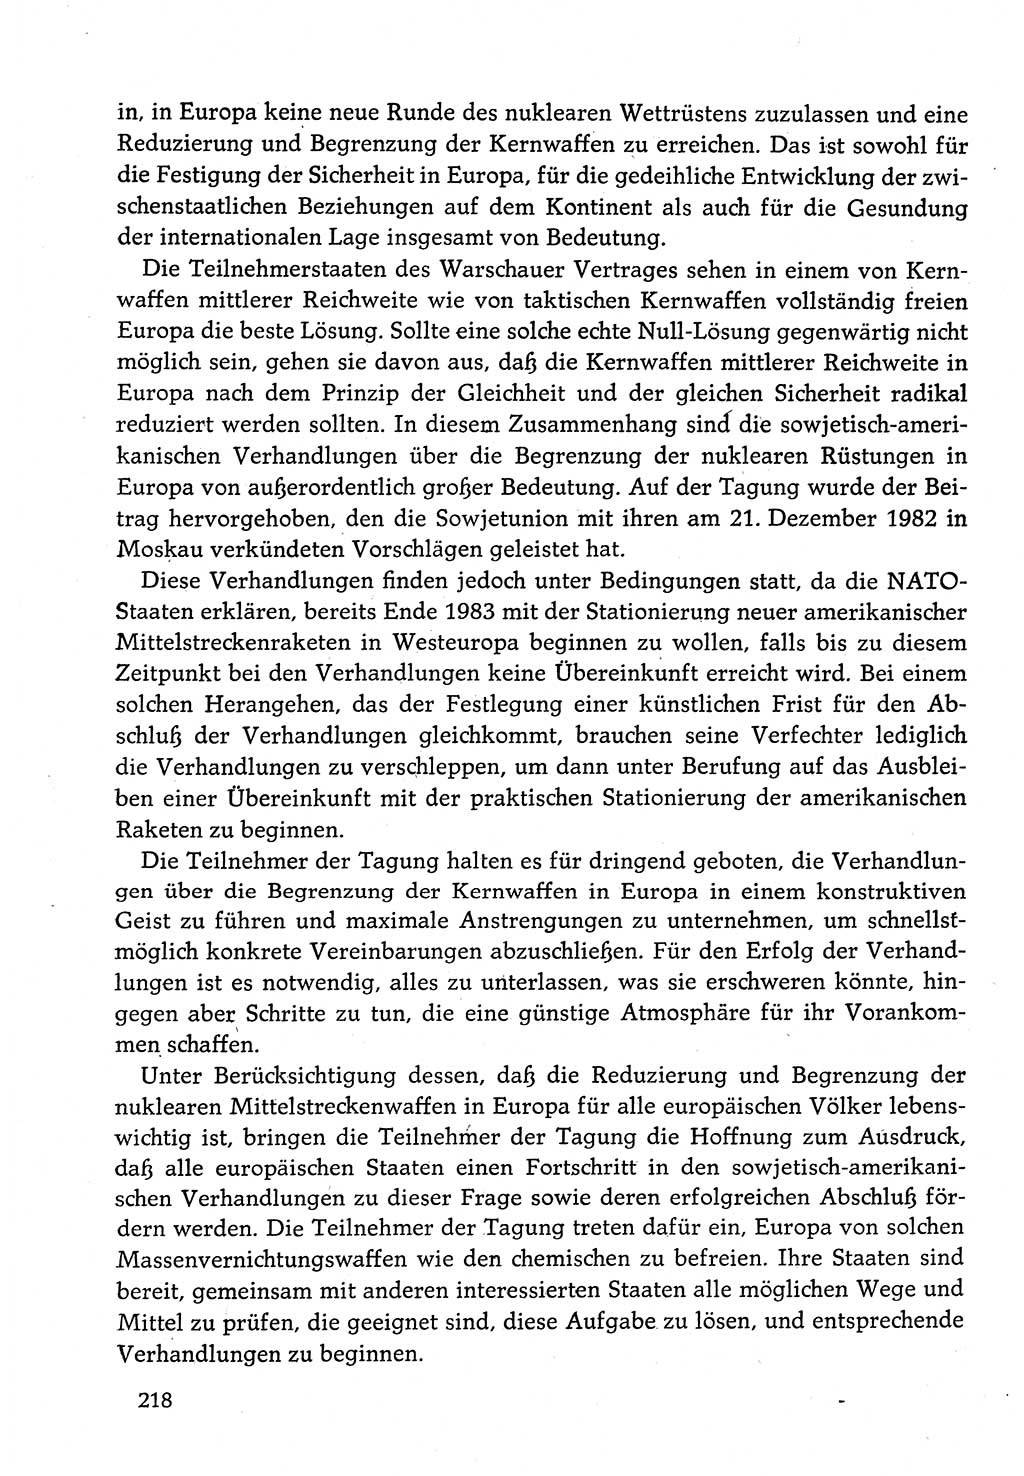 Dokumente der Sozialistischen Einheitspartei Deutschlands (SED) [Deutsche Demokratische Republik (DDR)] 1982-1983, Seite 218 (Dok. SED DDR 1982-1983, S. 218)